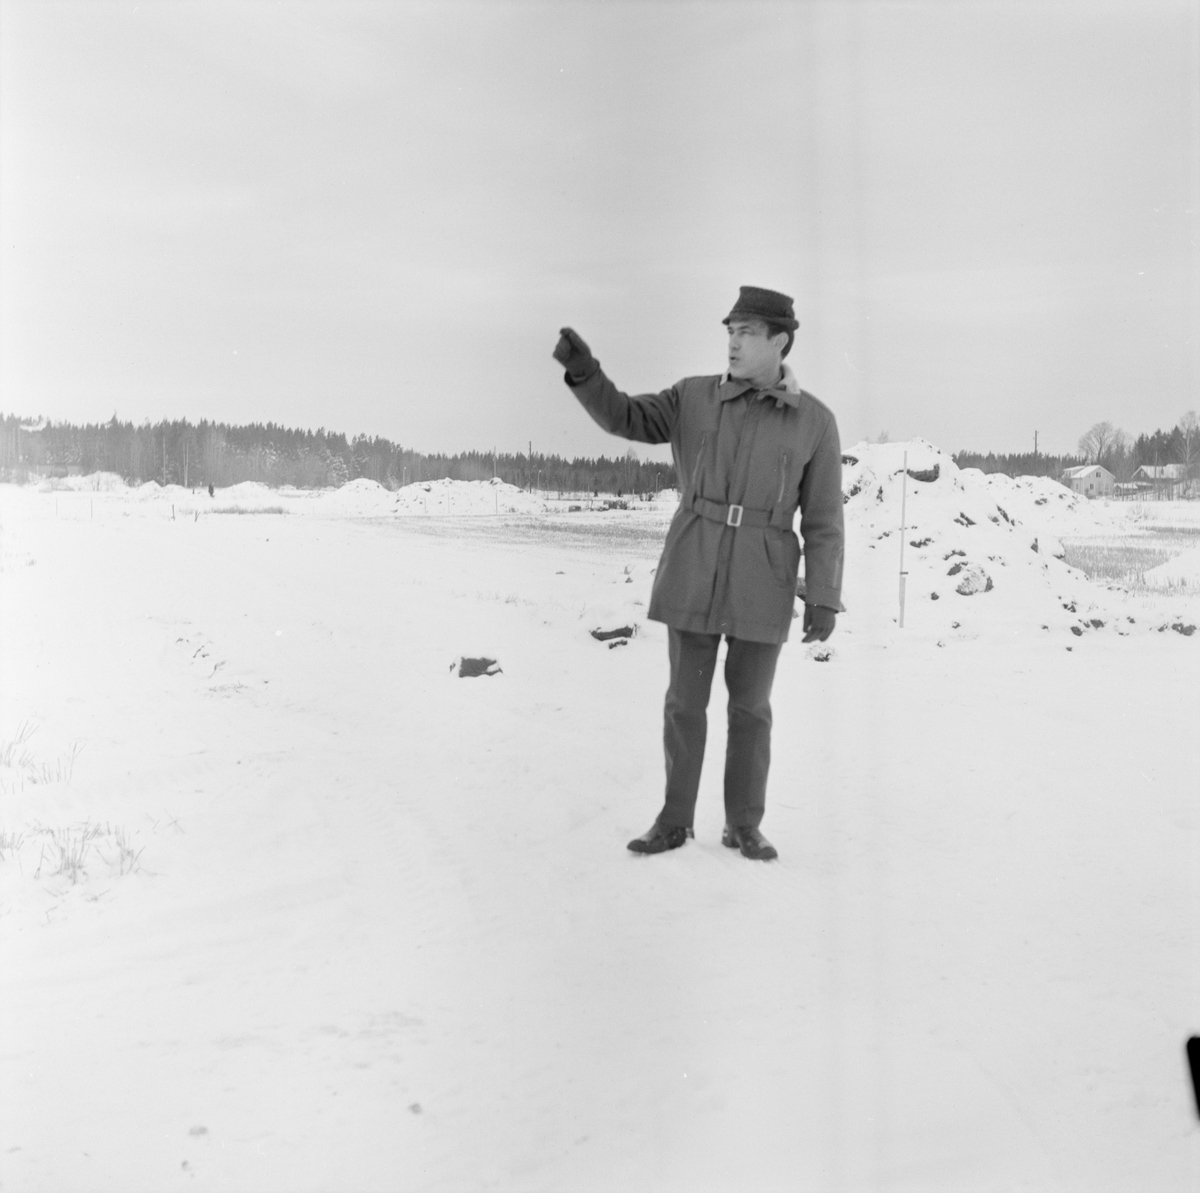 Tierpsbygden vill utföra VA-arbeten för 1,5 miljoner, Uppland, december 1971